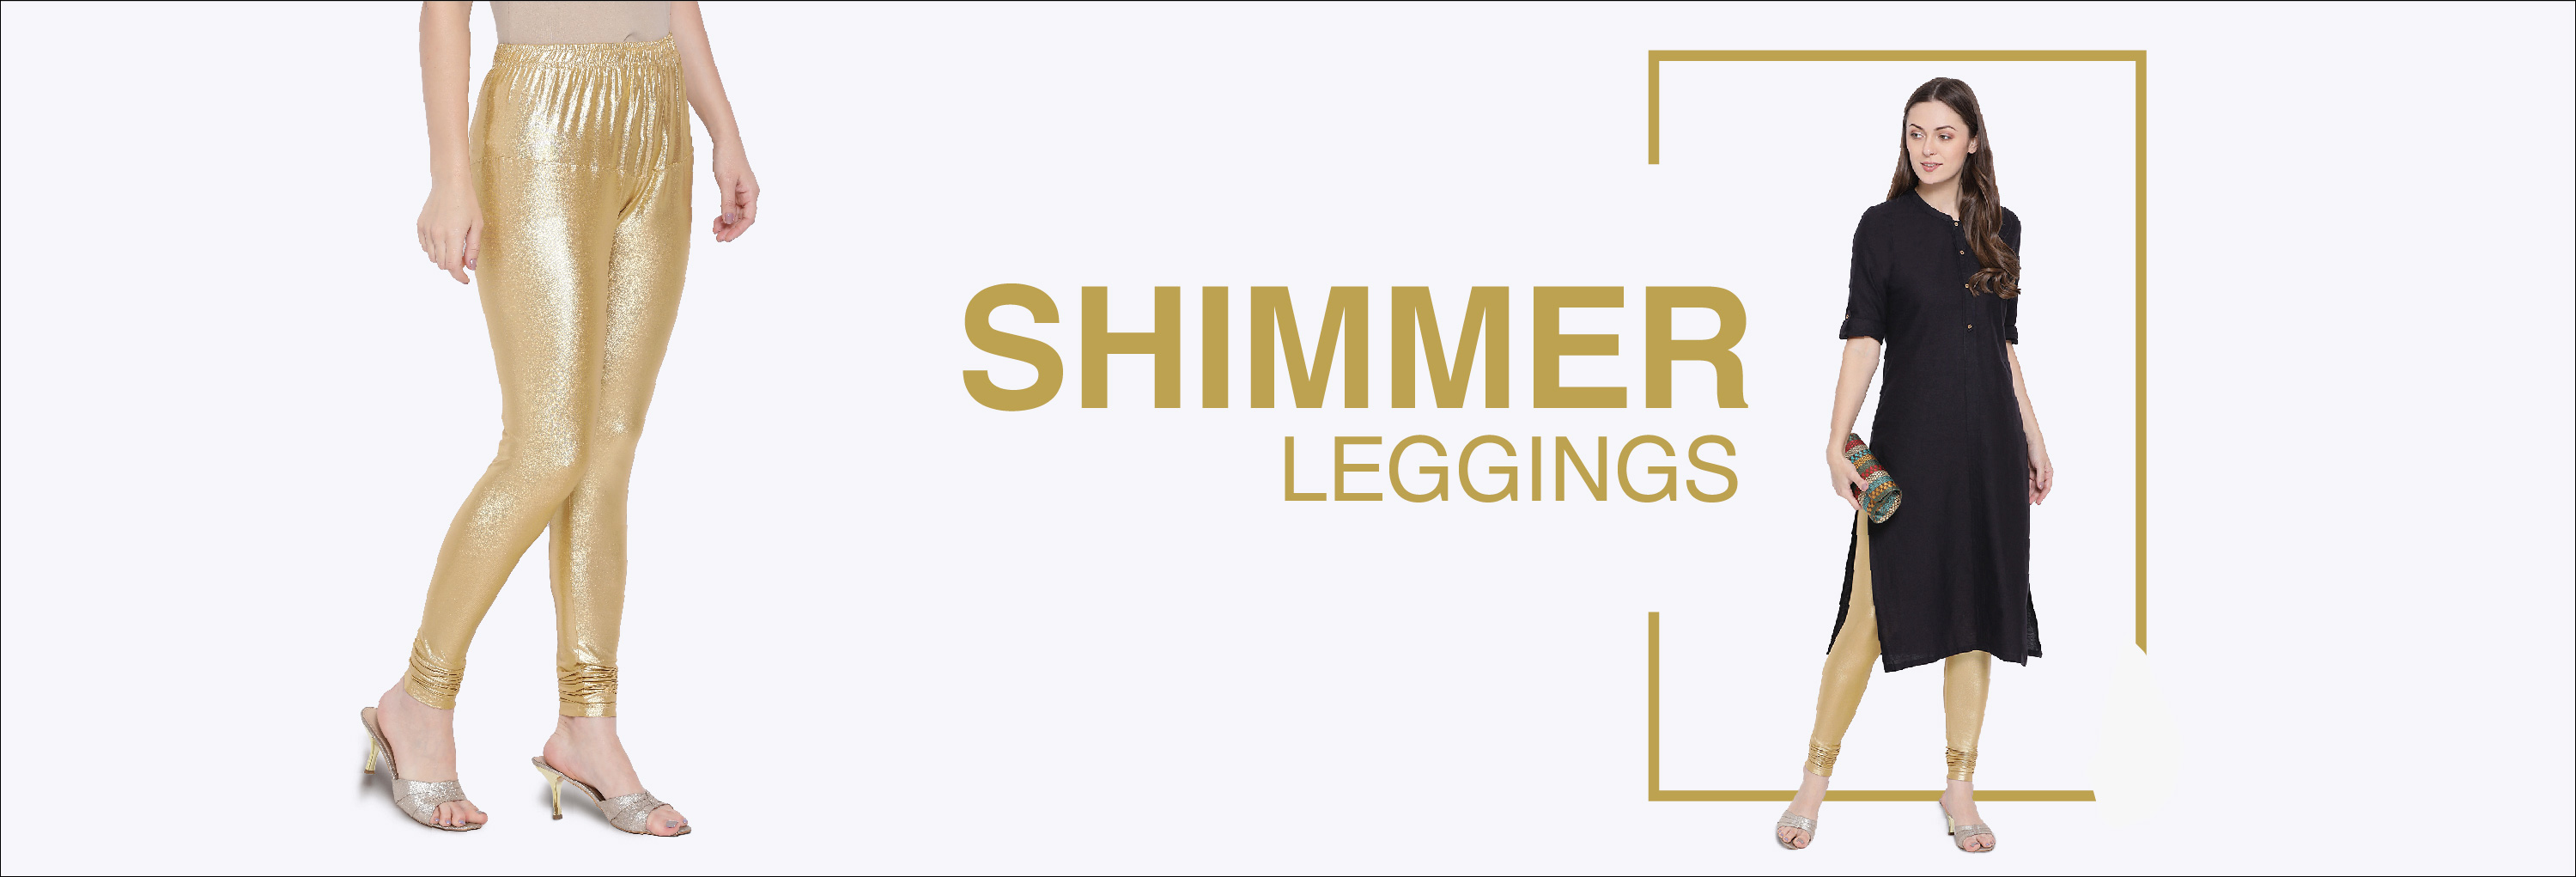 SHIMMER - LEGGINGS